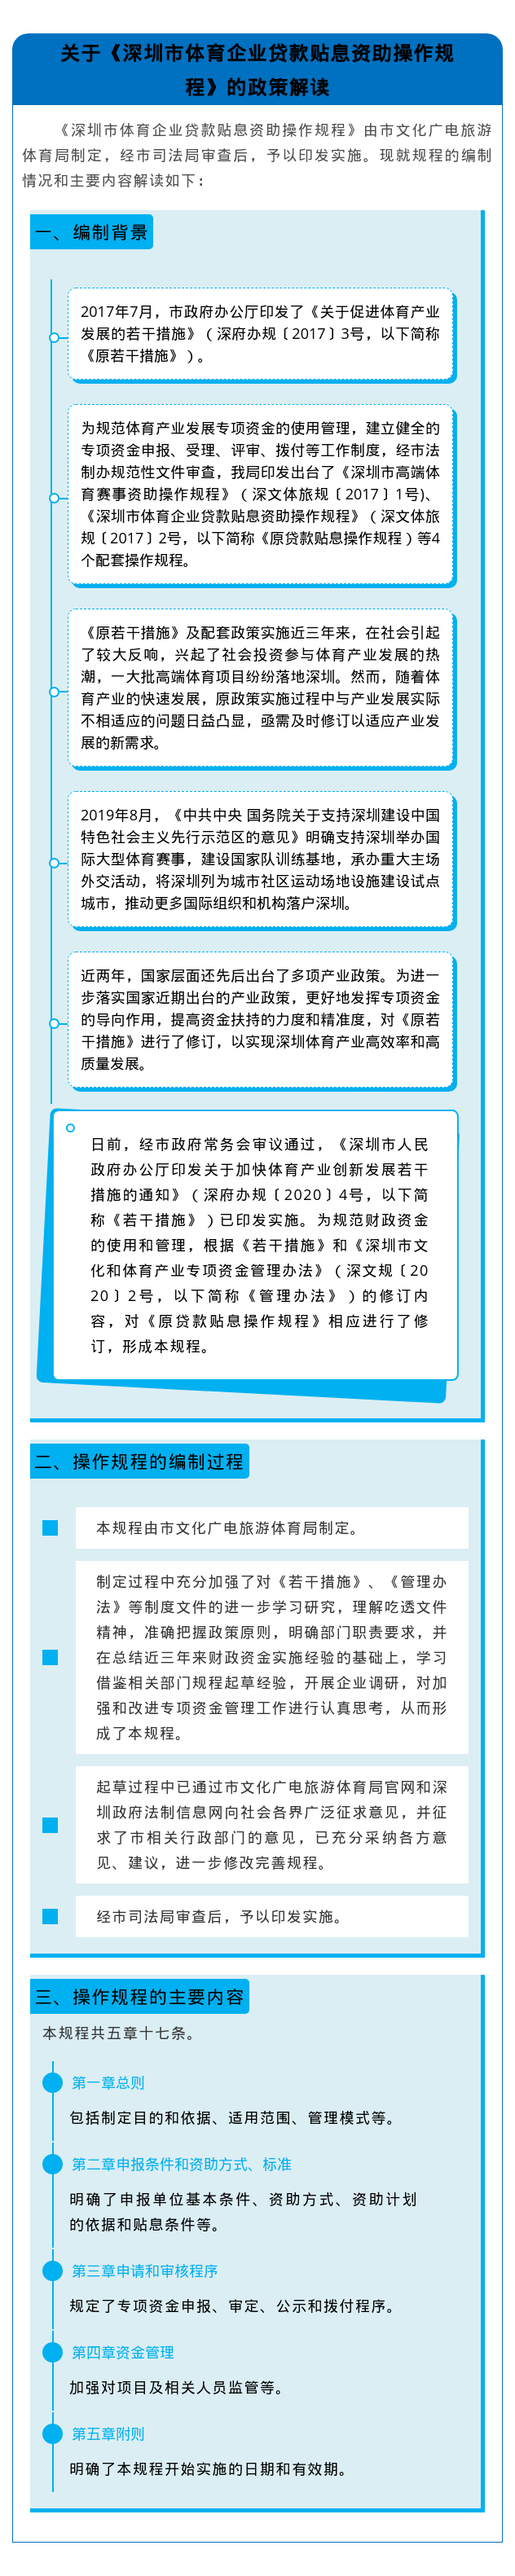 【图解】关于《深圳市体育企业贷款贴息资助操作规程》的政策解读